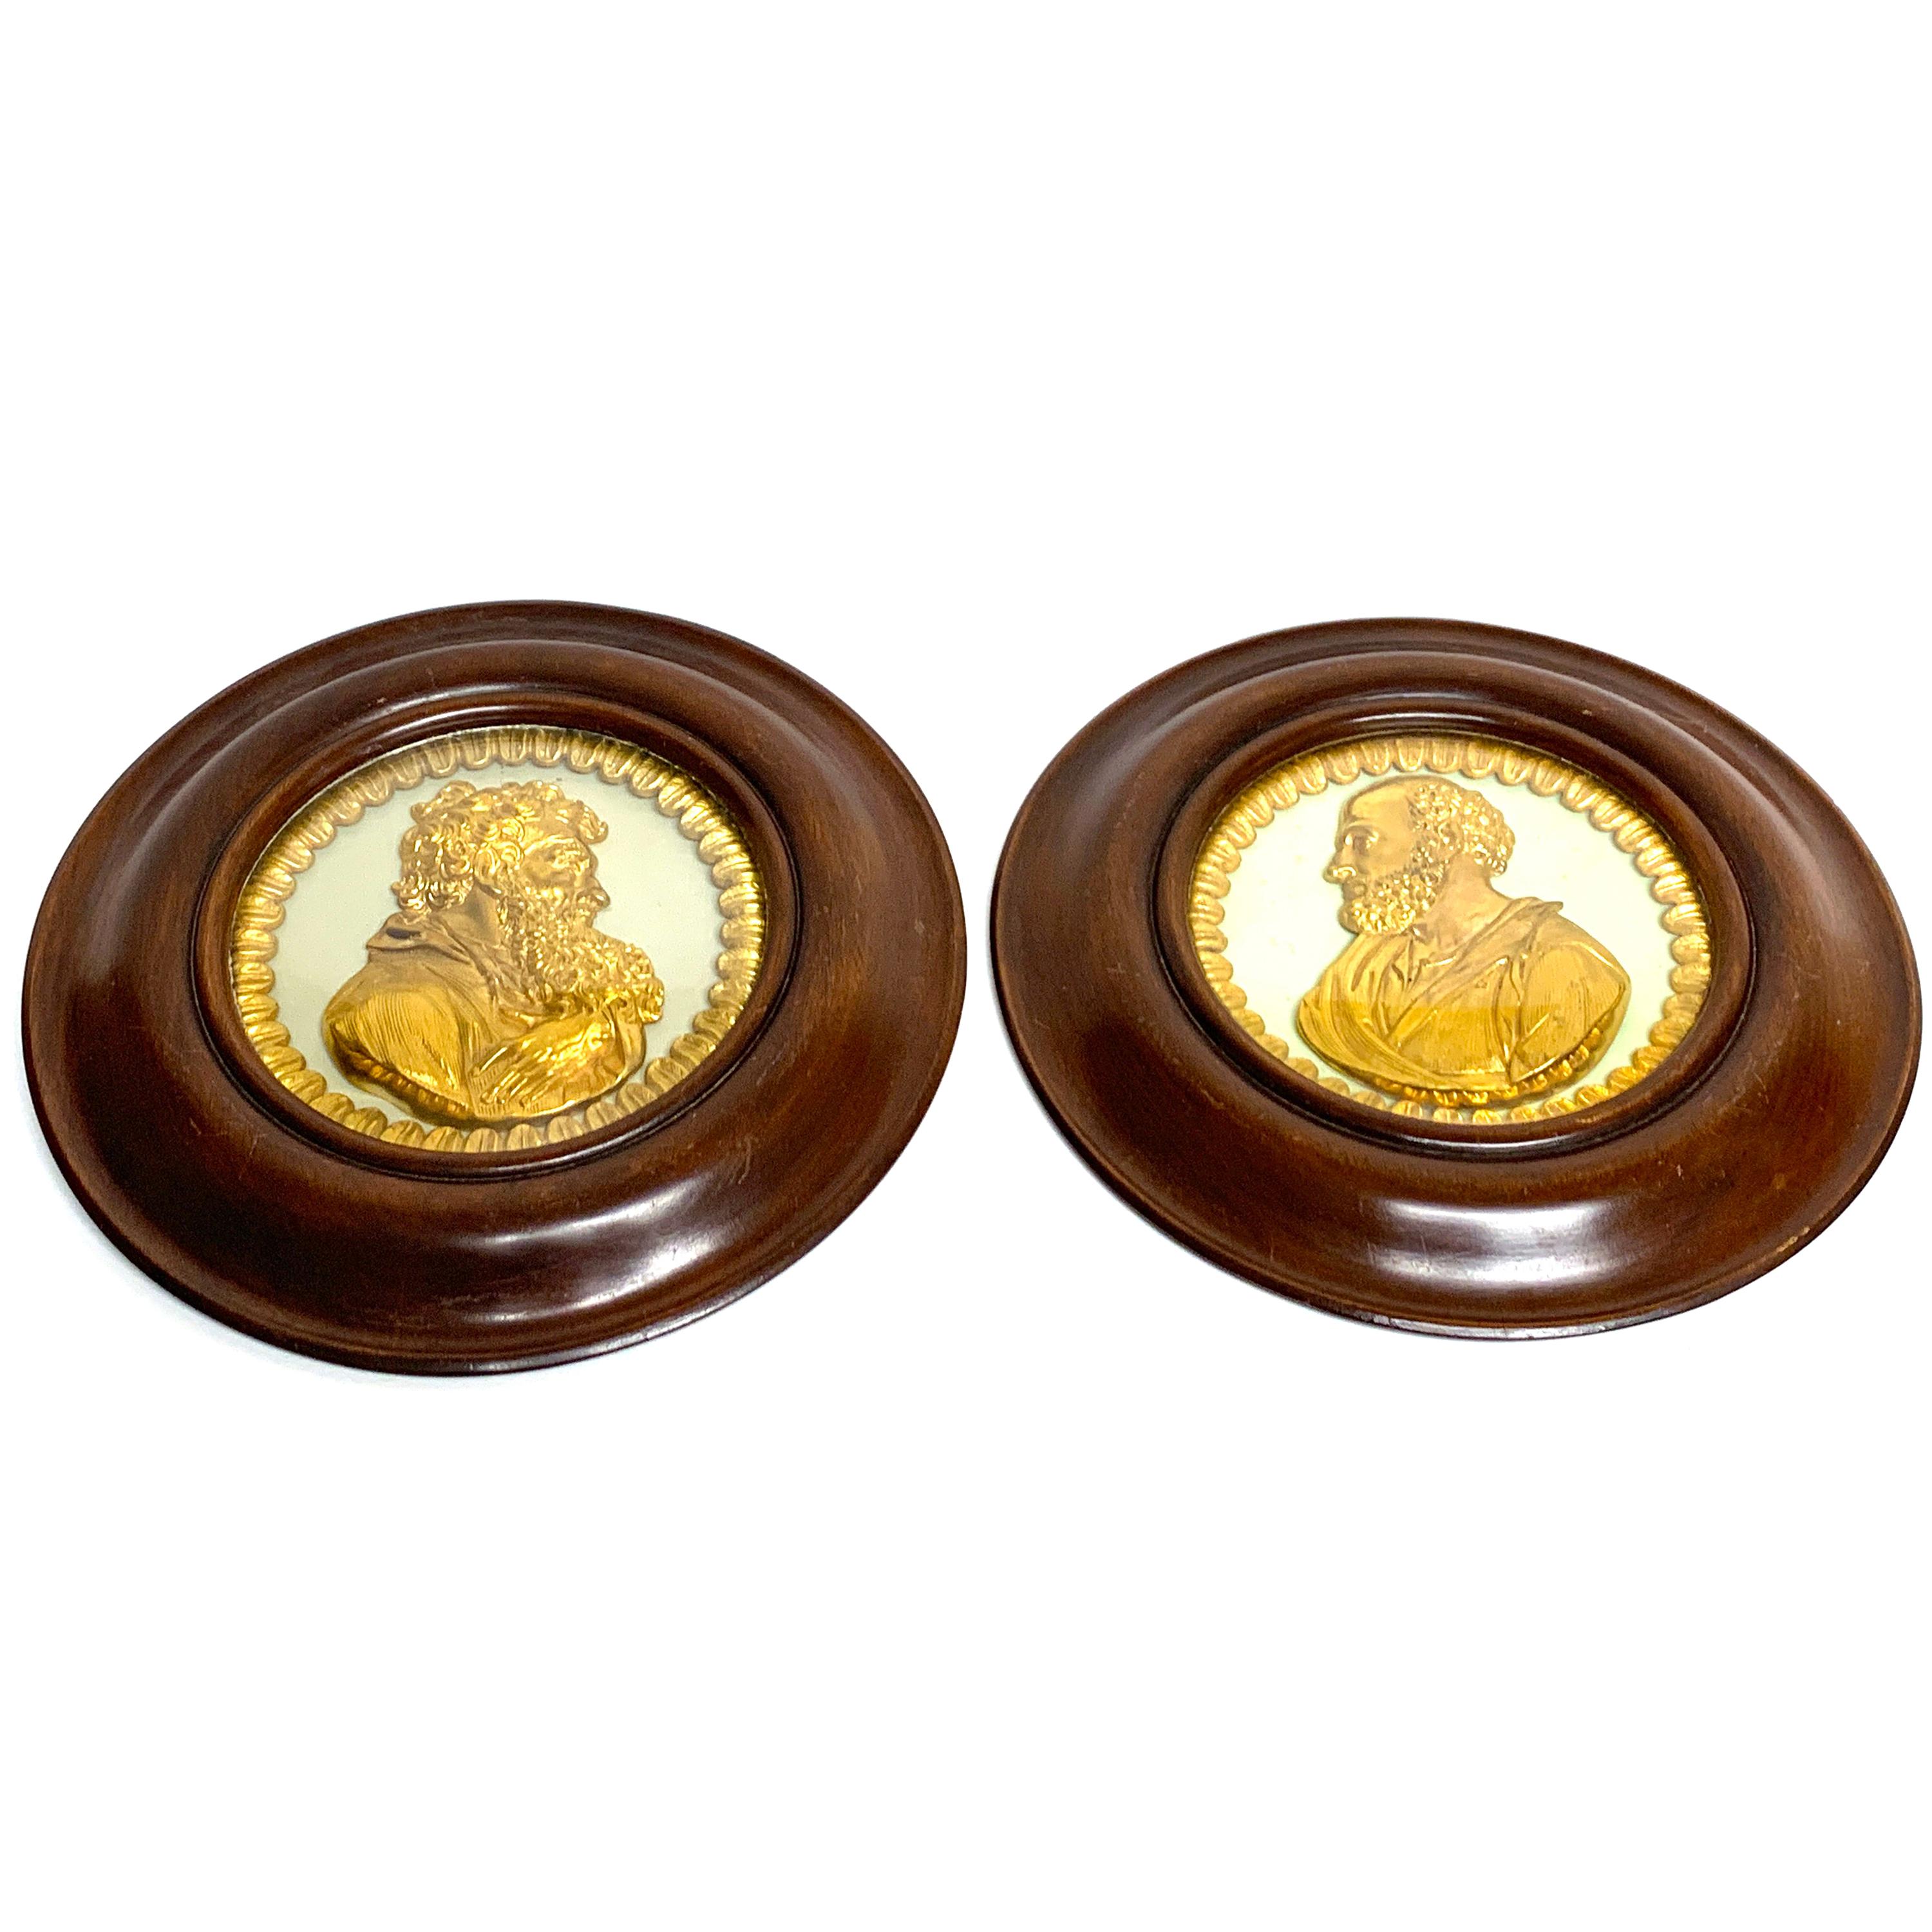 Paire de plaques de portraits de Saint-Paul et Socrate encadrées en bronze doré de style Régence anglaise